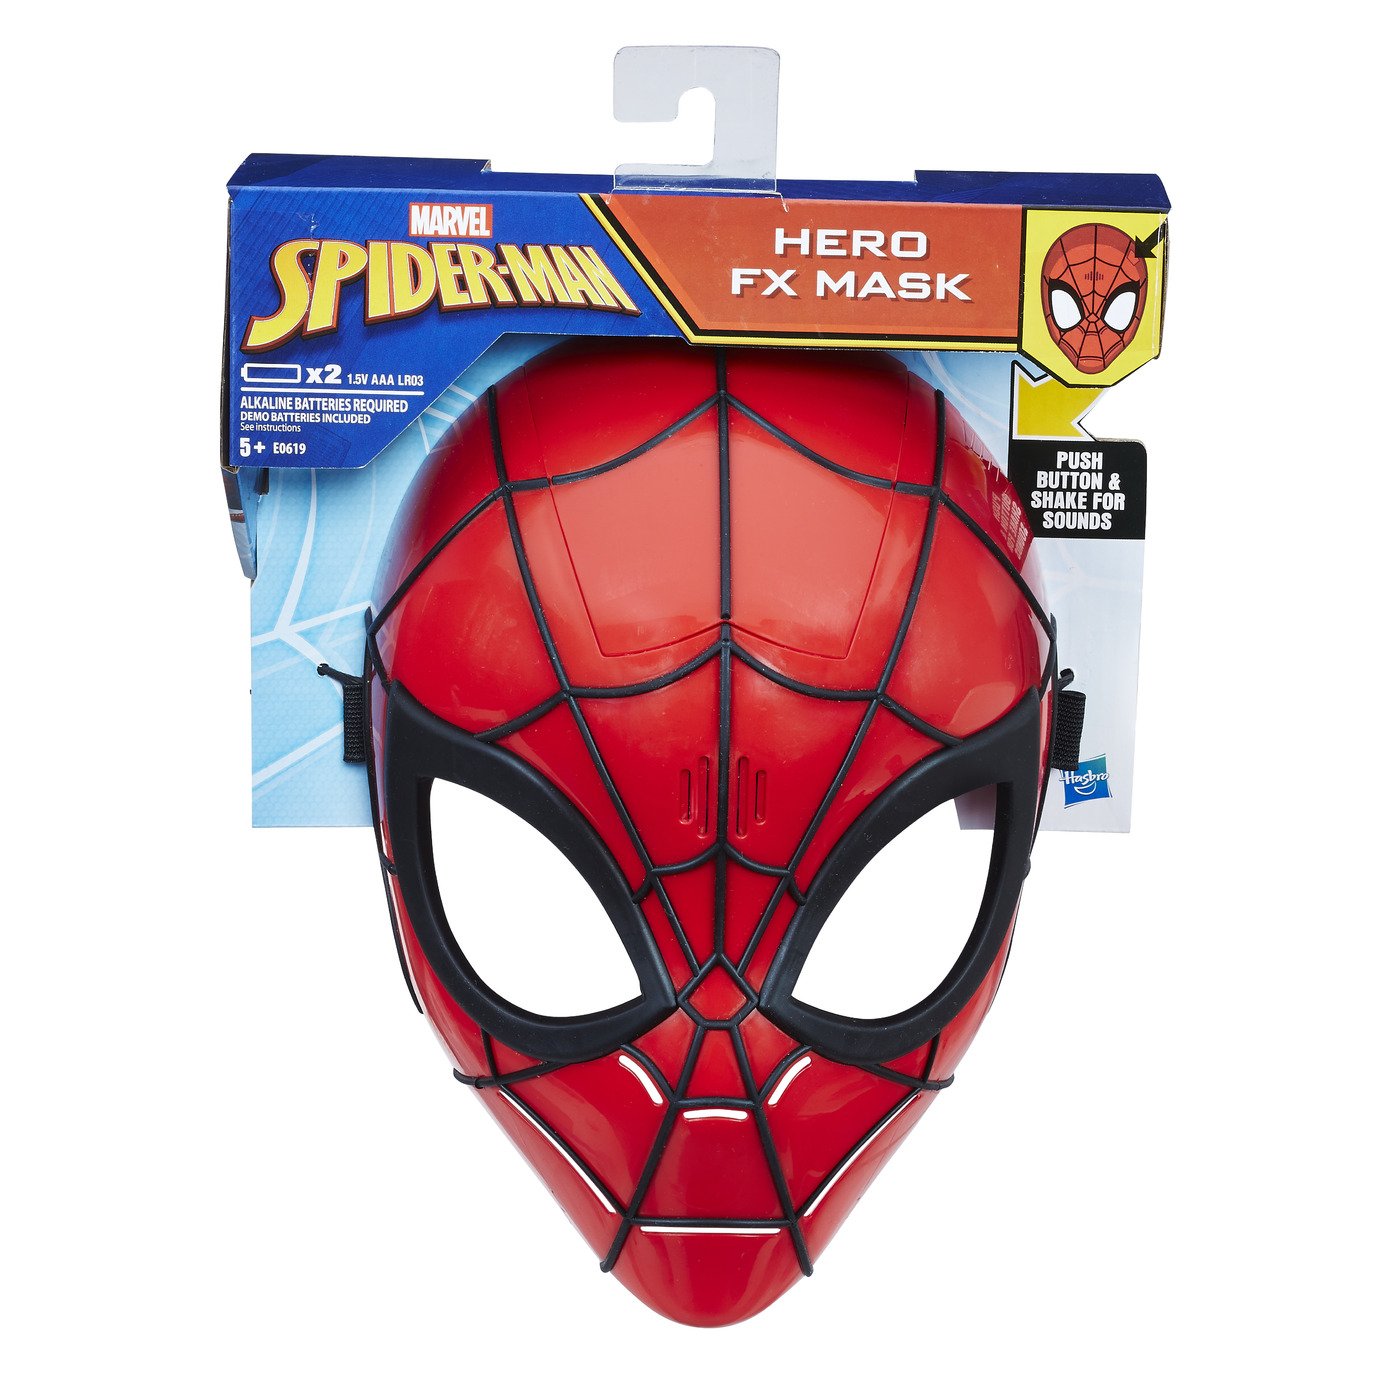 Spider-Man Hero FX Mask